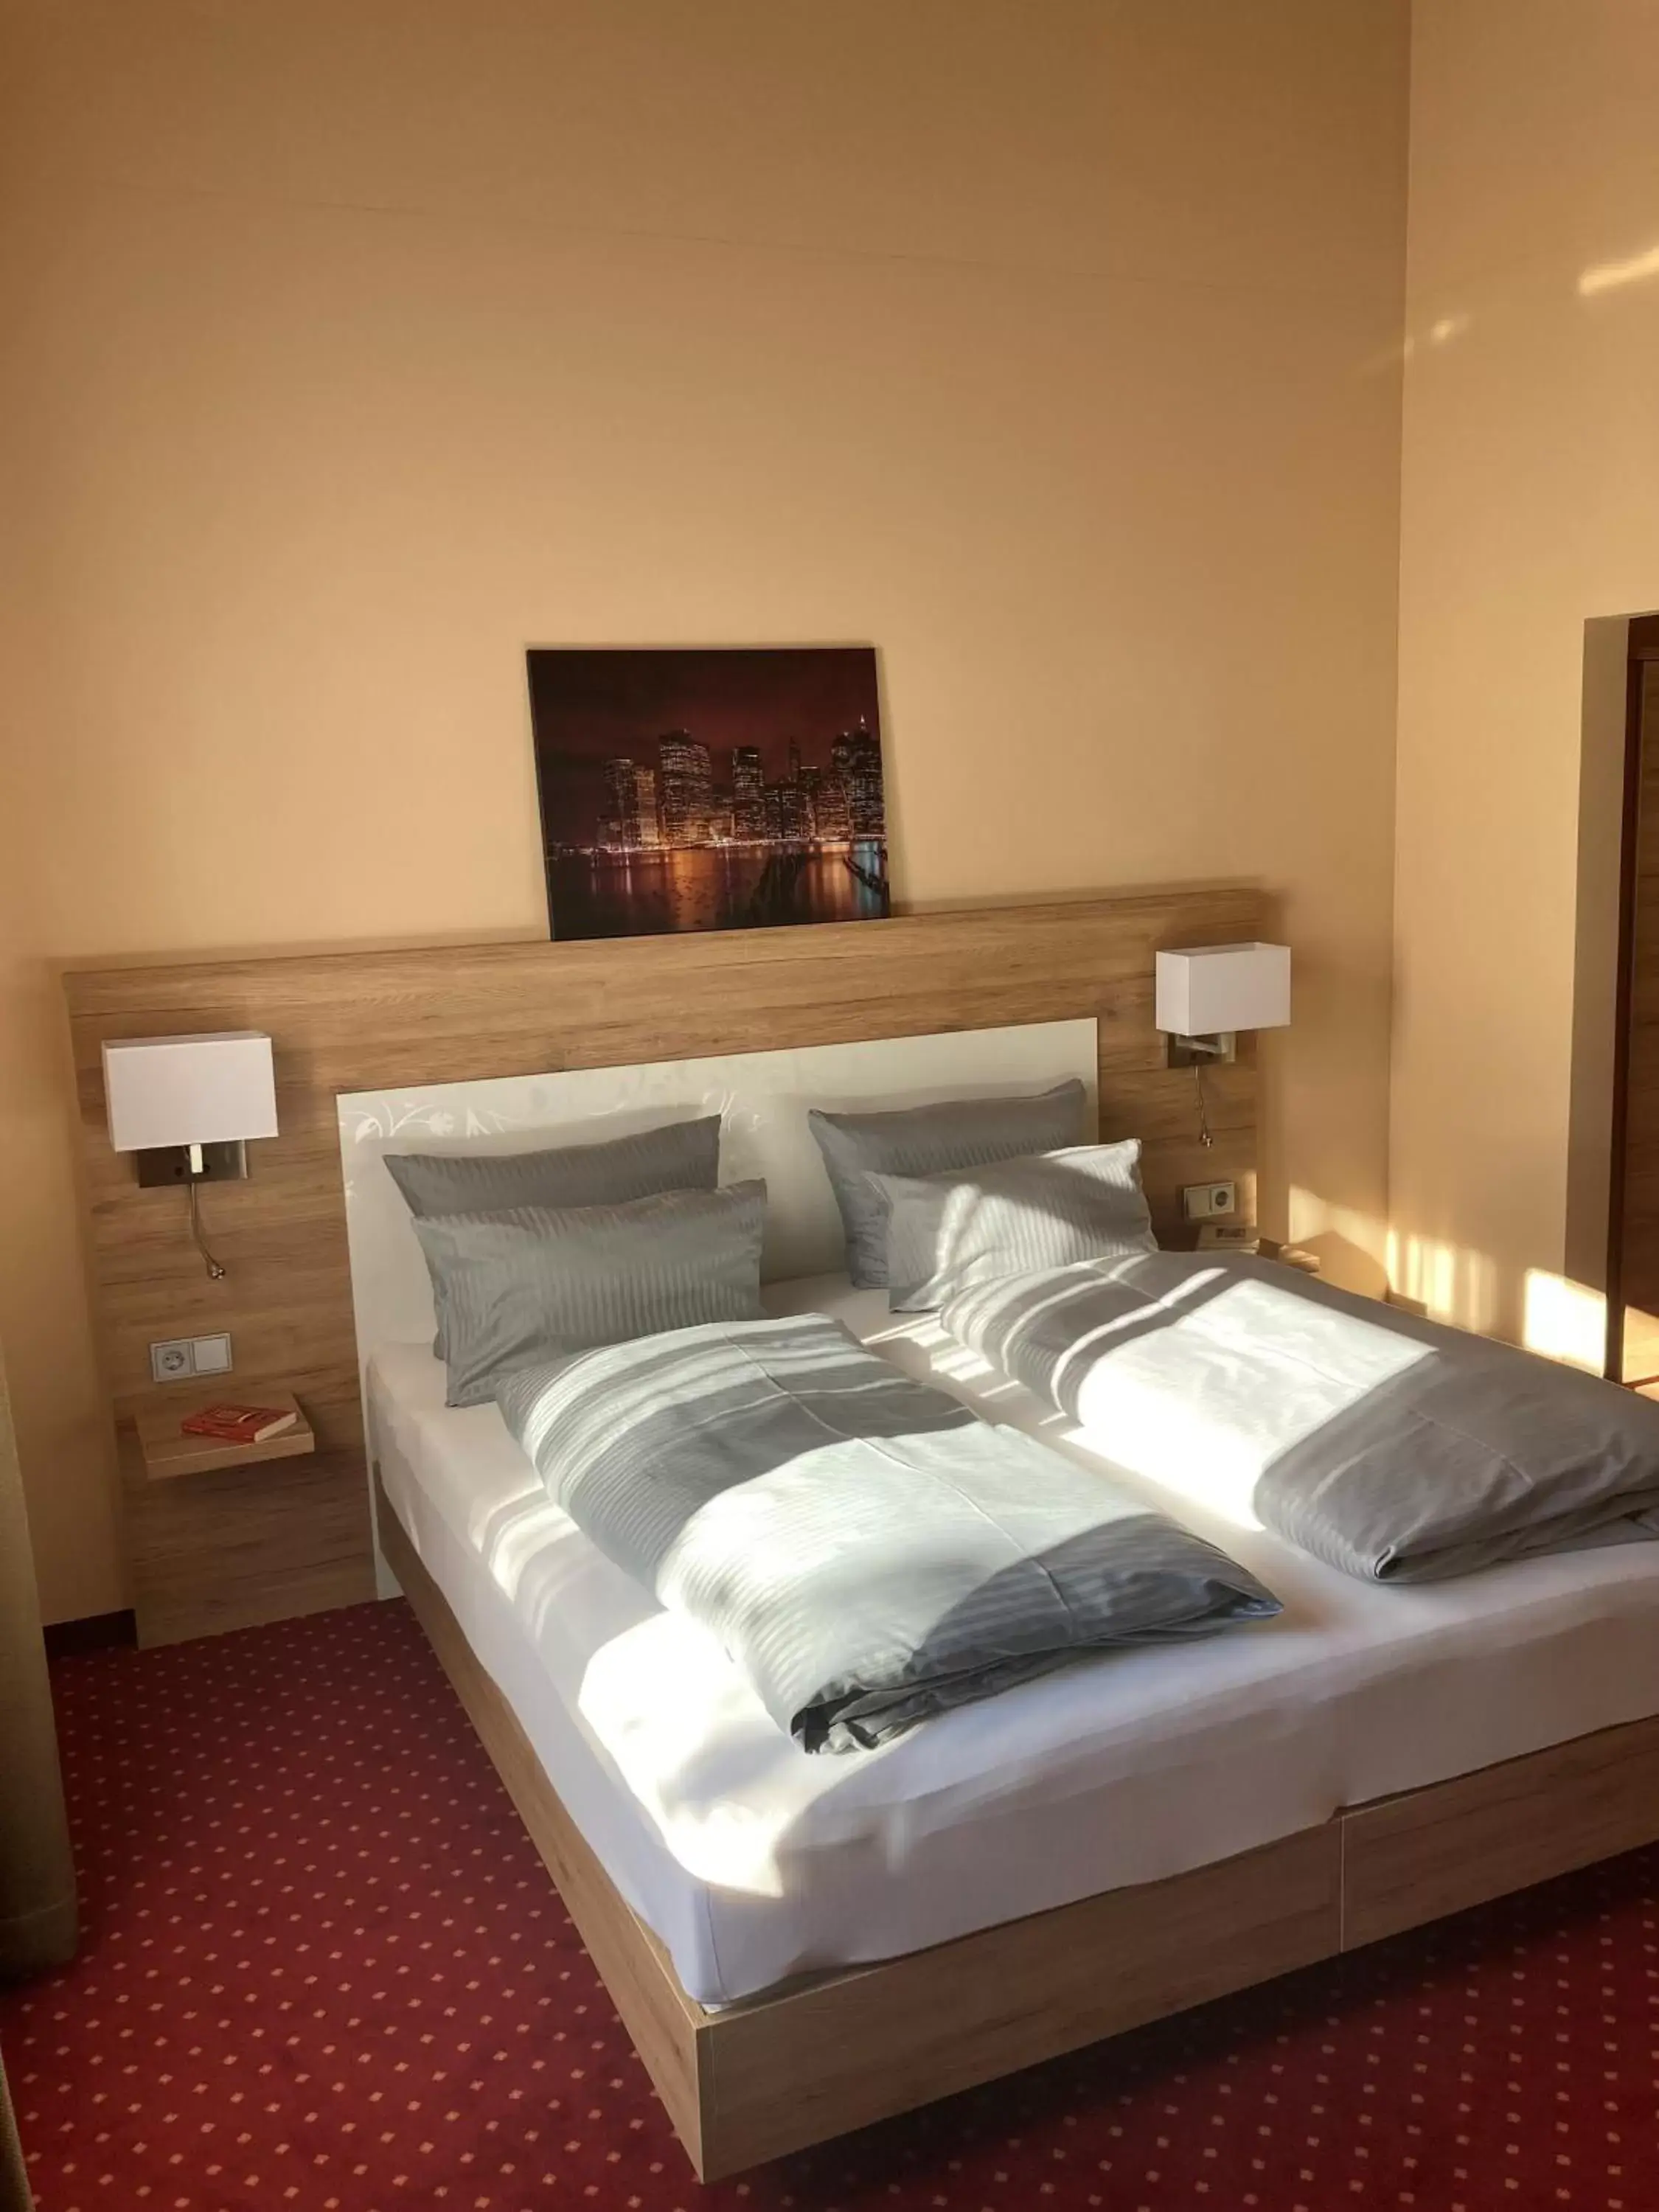 Bed in Hotel KonradP Holzkirchen